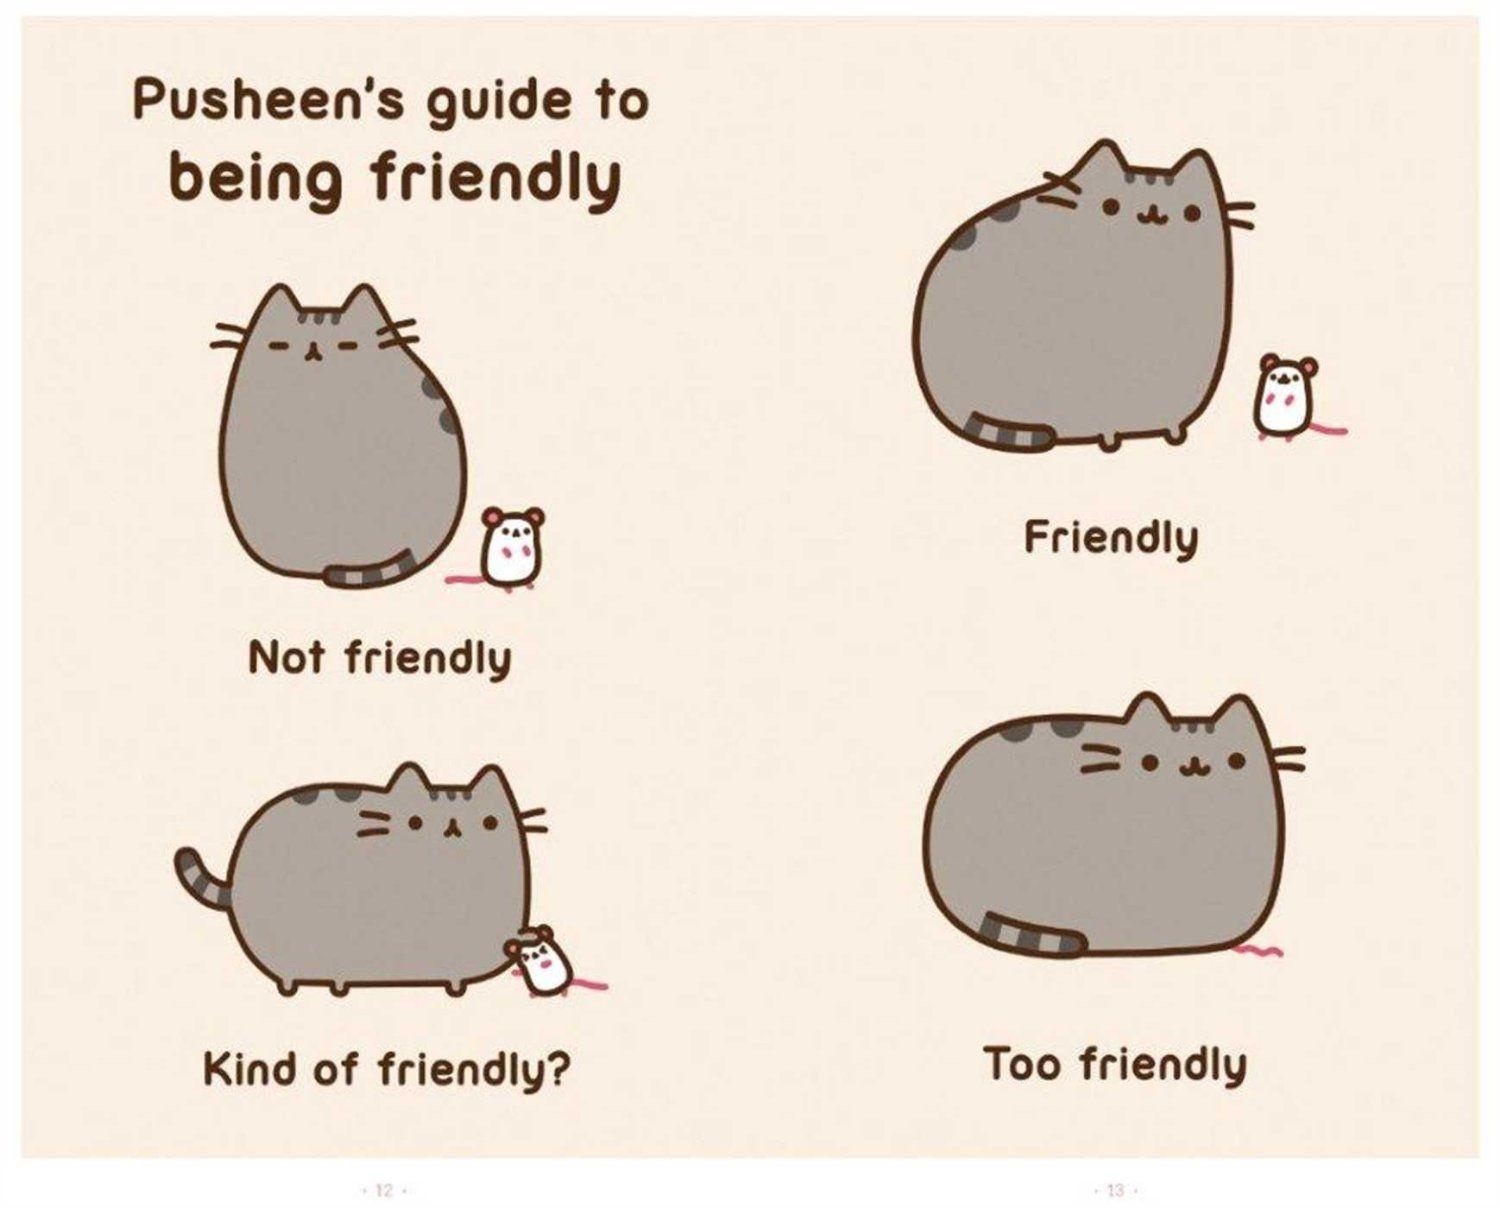 best image about Pusheen The Cat. Saint